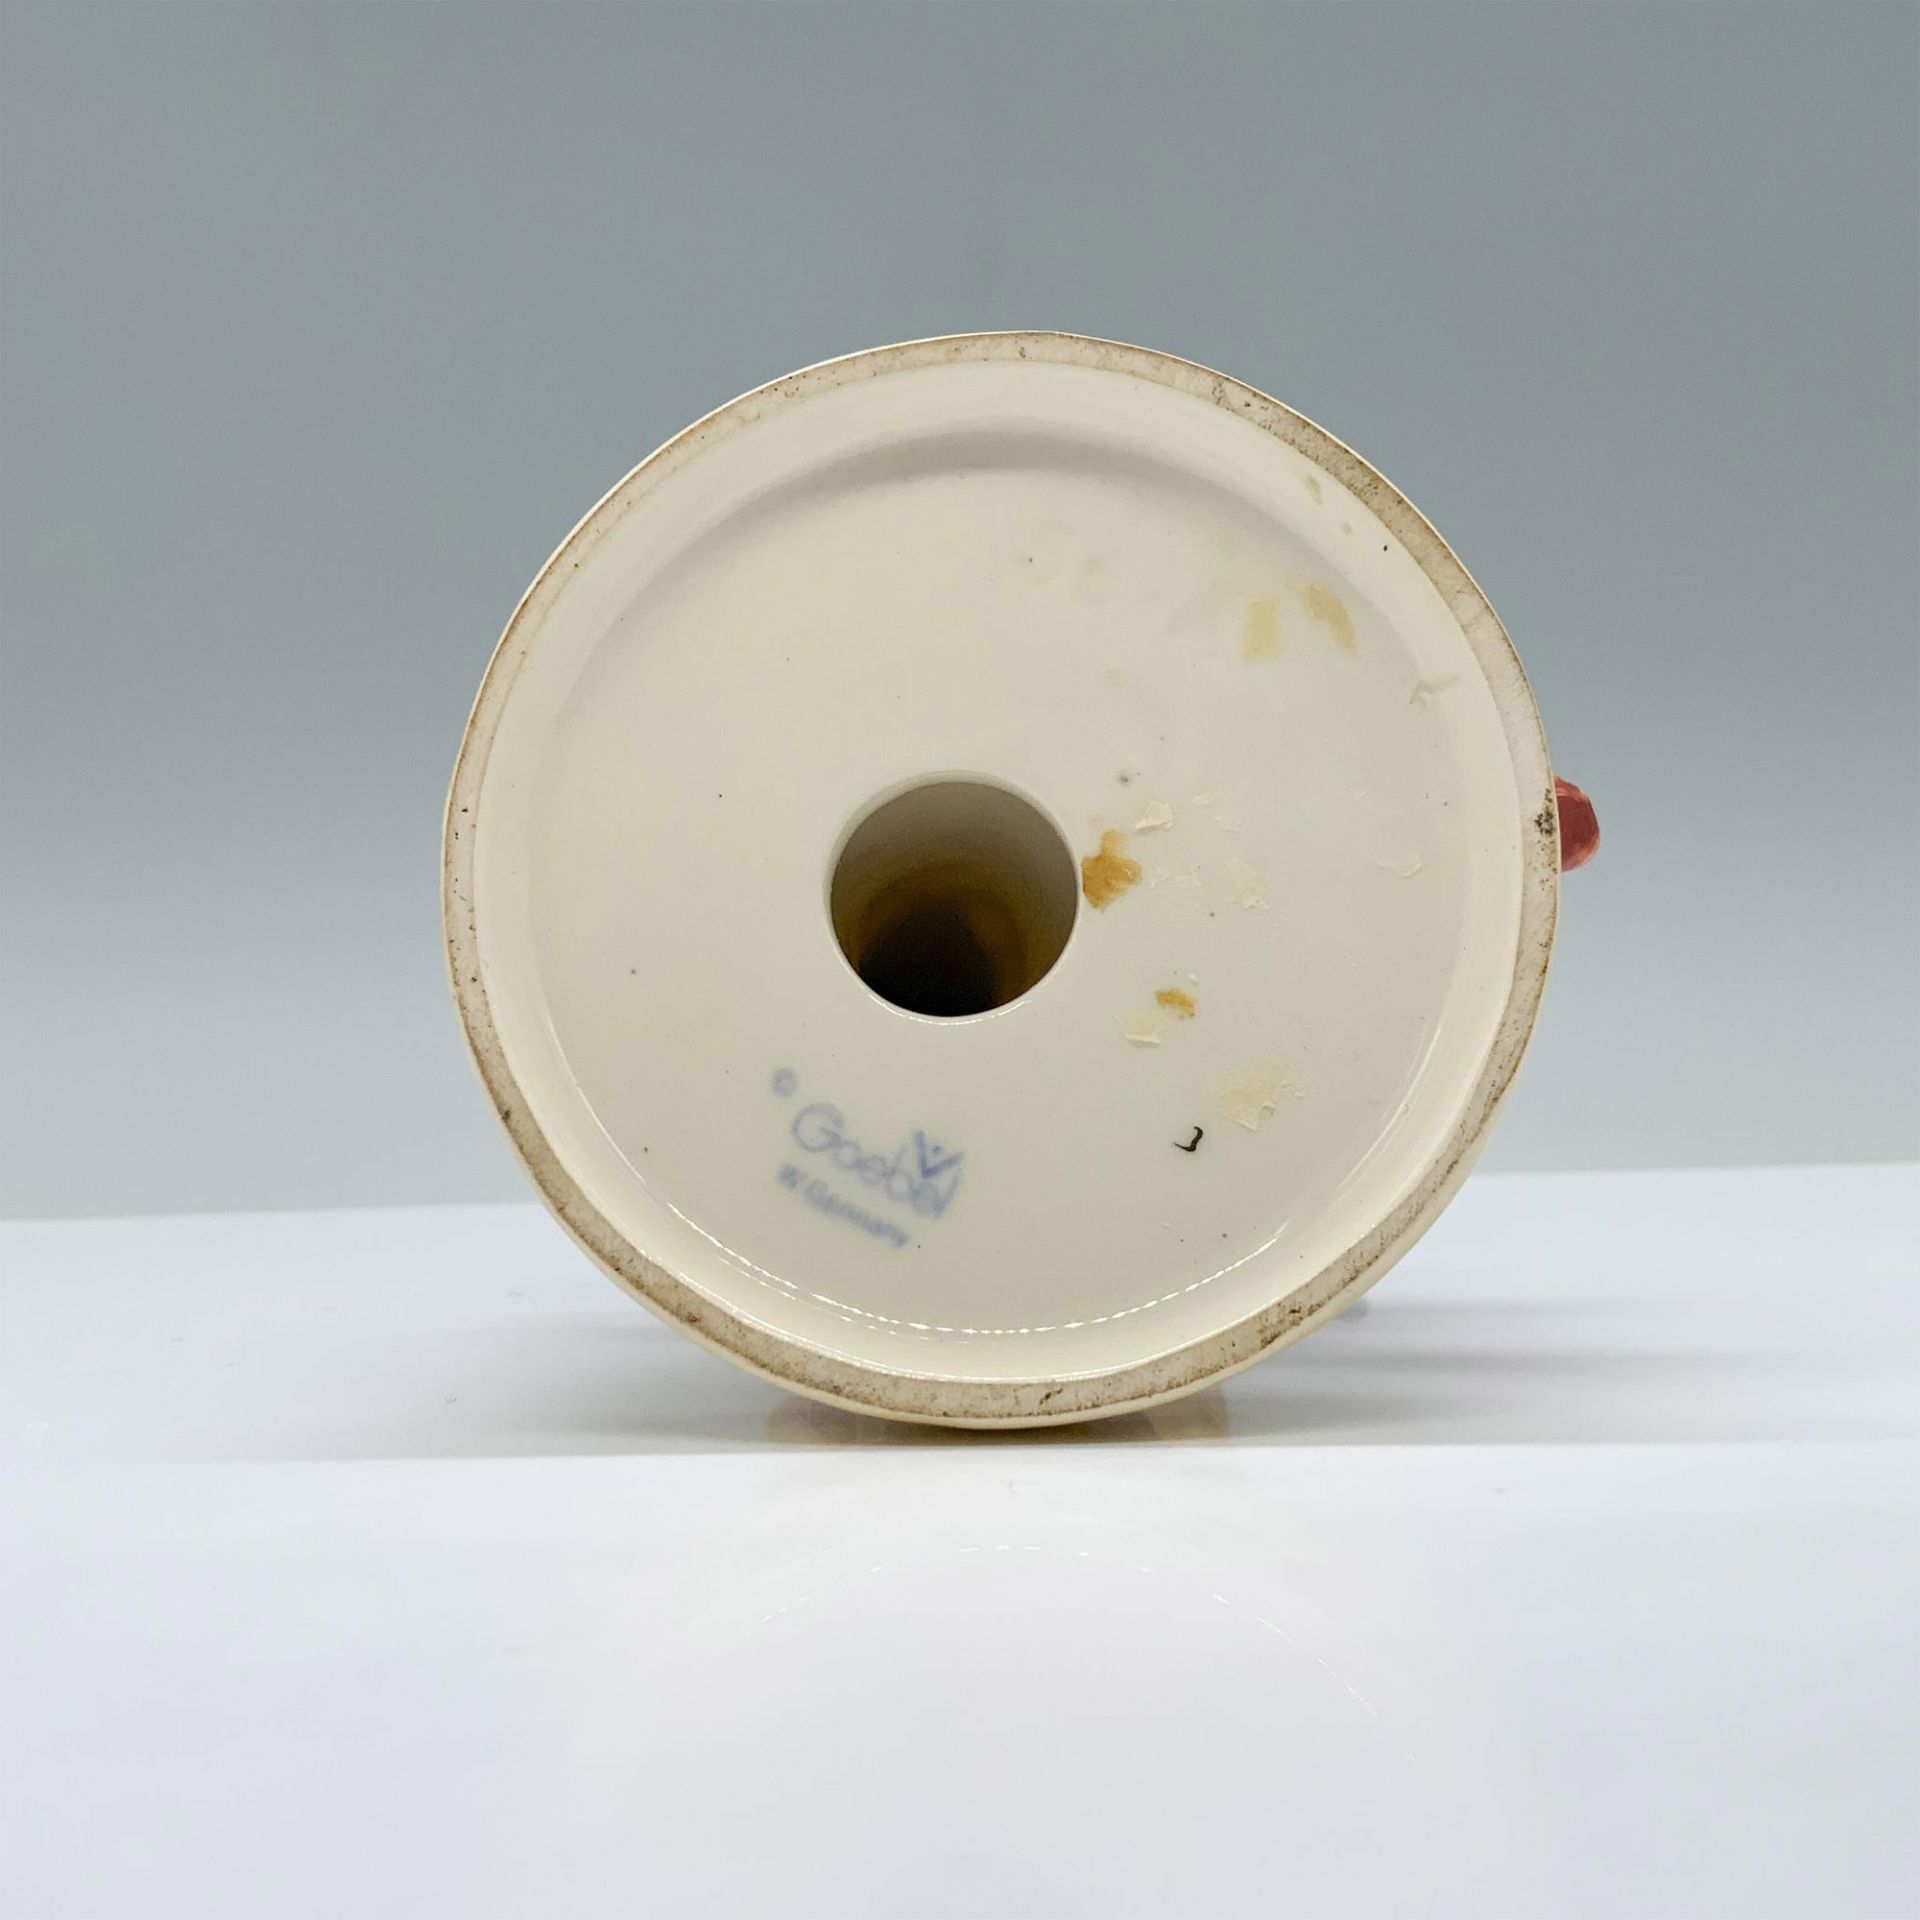 Goebel Hummel Porcelain Figurine, Culprits - Image 3 of 3